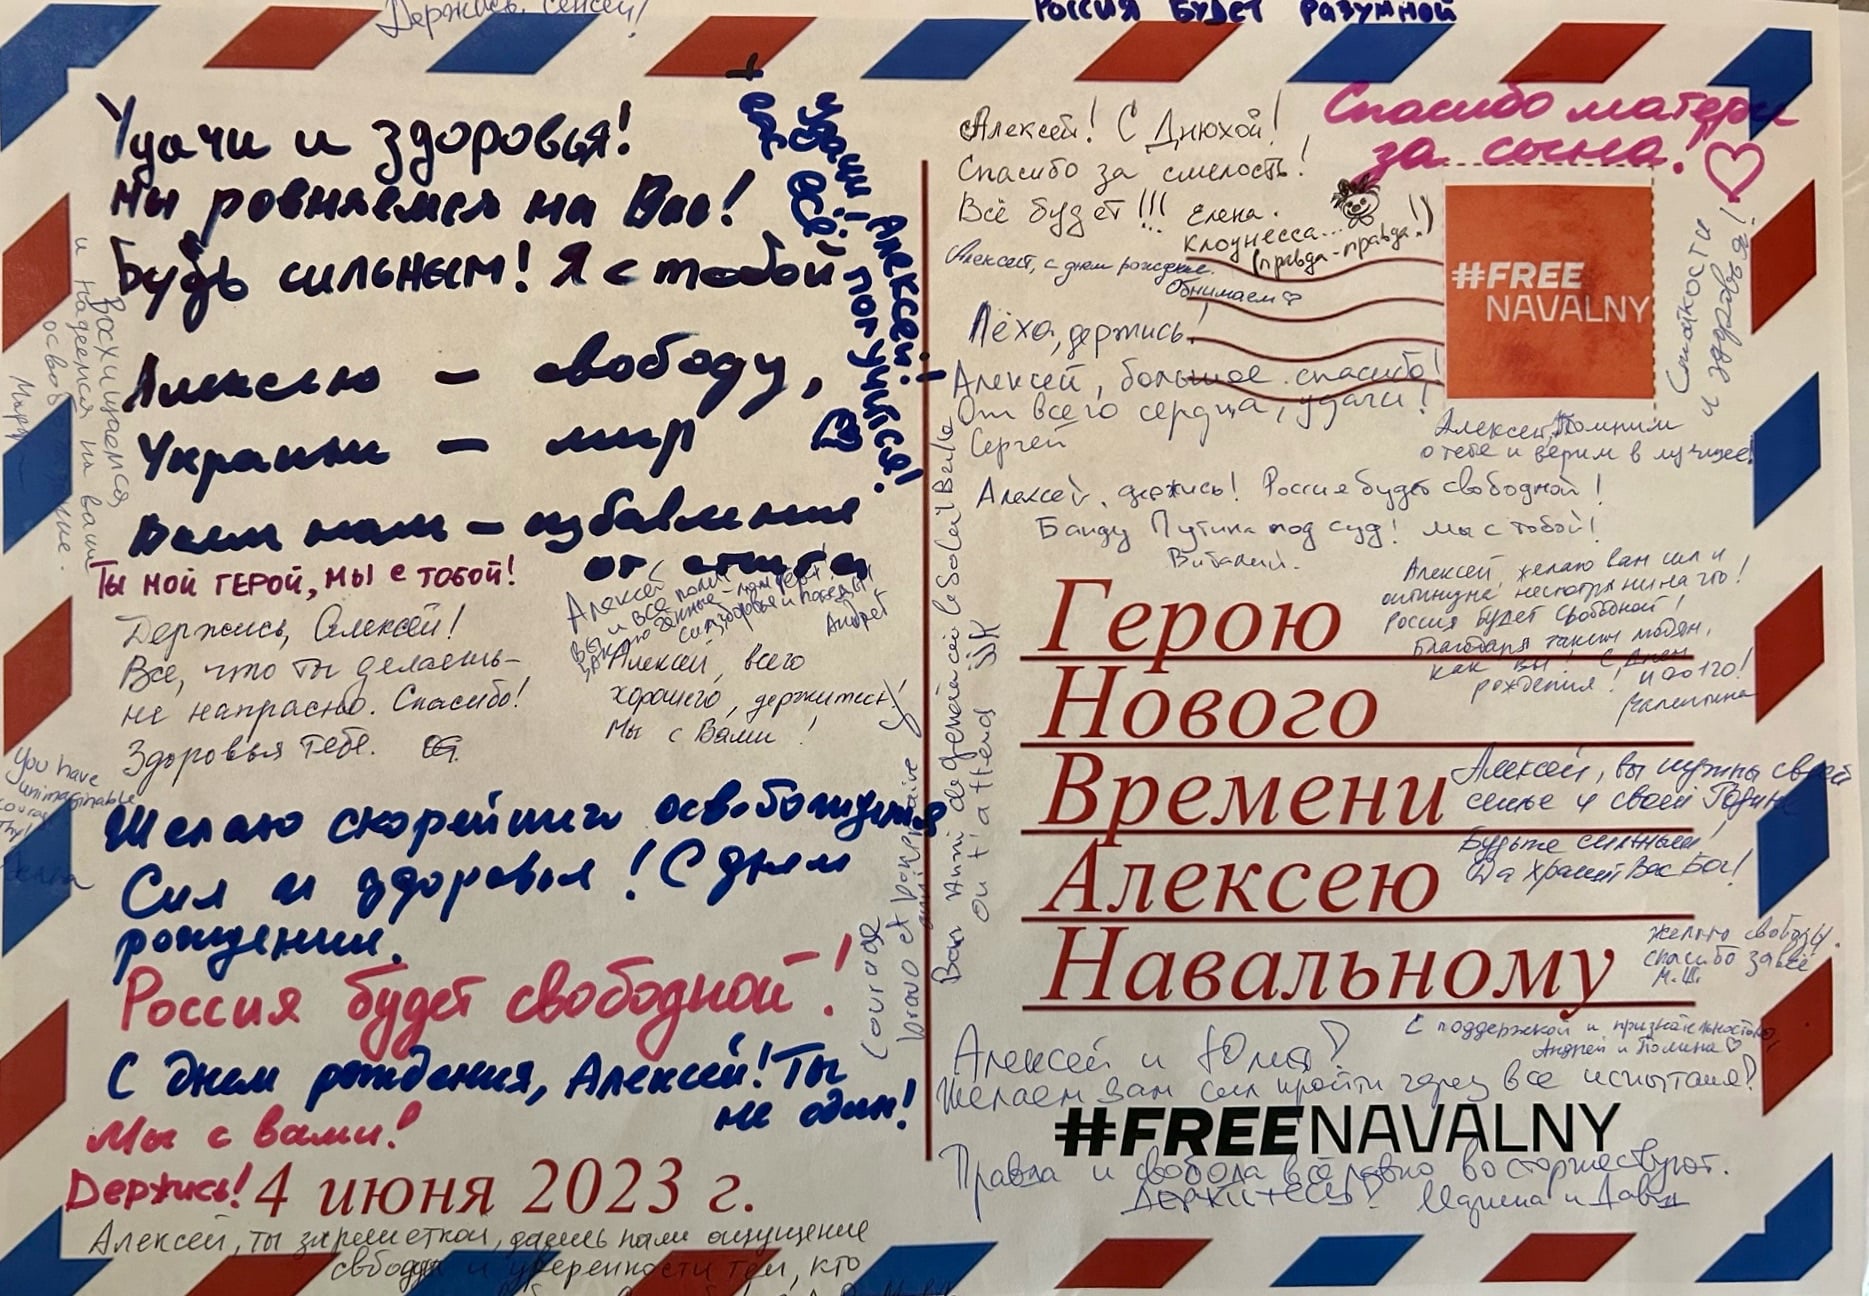 Участники митинга «Ты не один» 4 июня 2023 г. на Площади Наций в Женеве написали и отправили письмо поддержки Алексею Навальному. (© Катерина Васильева)